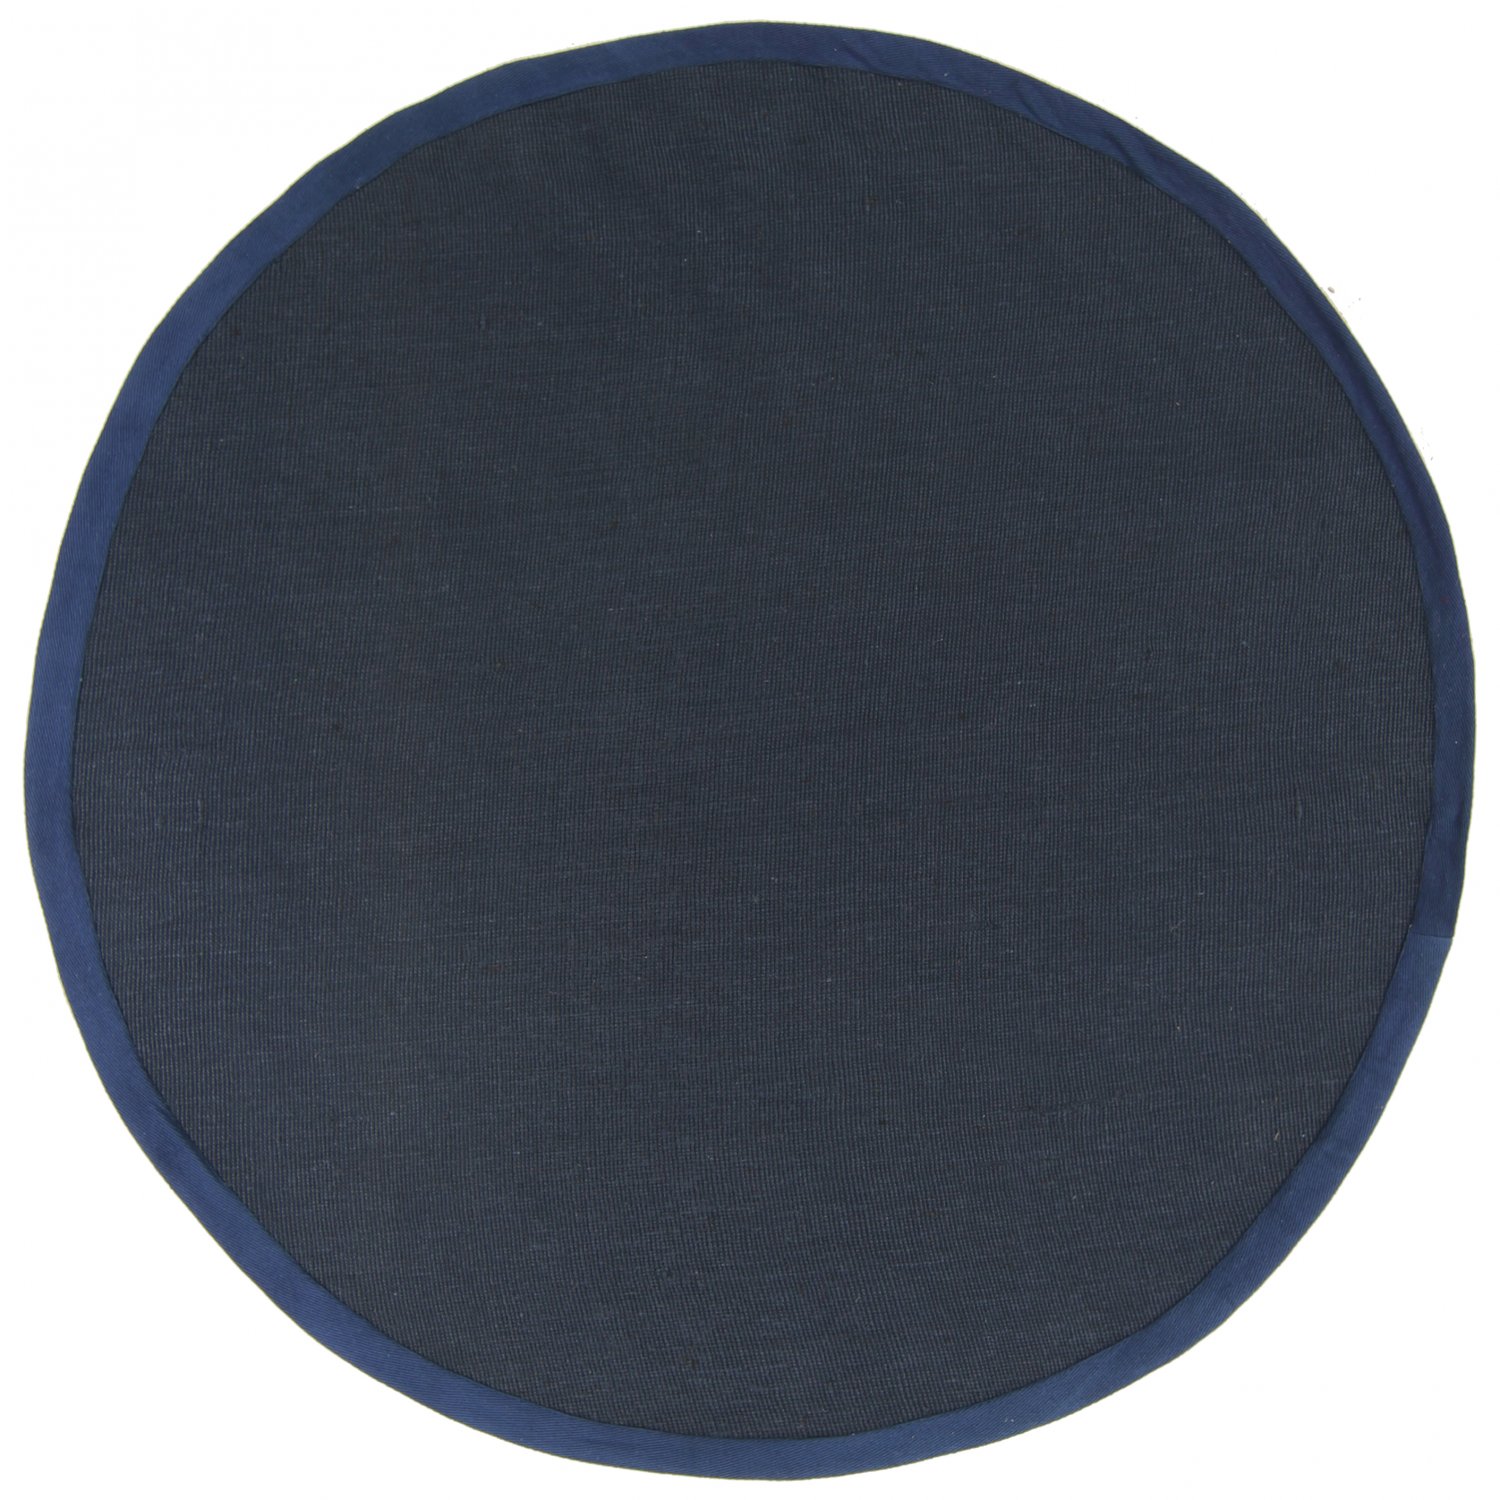 Runde tepper (sisal) - Agave (mørkeblå)